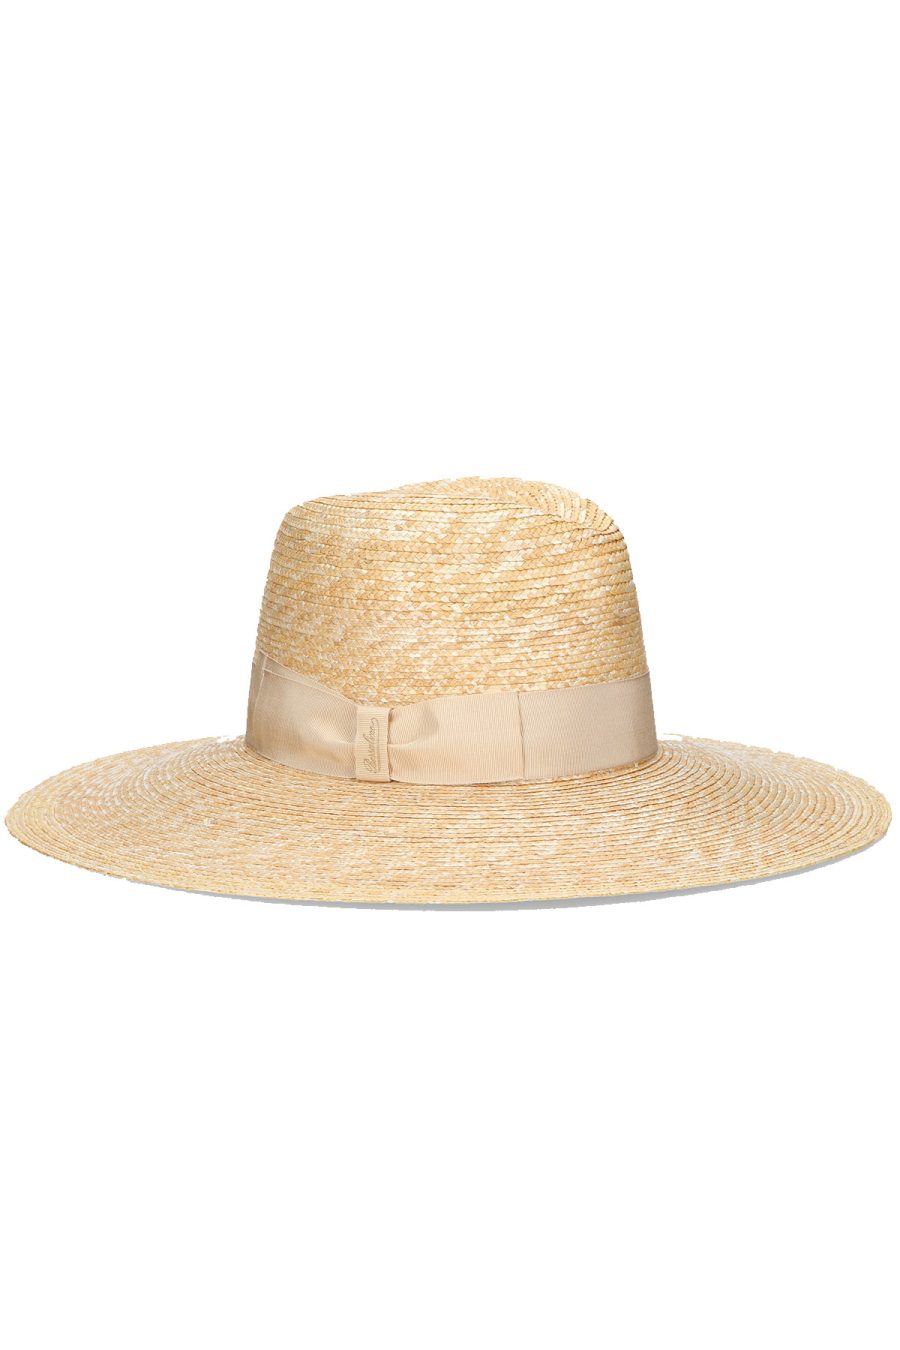 Borsalino Hats Natural